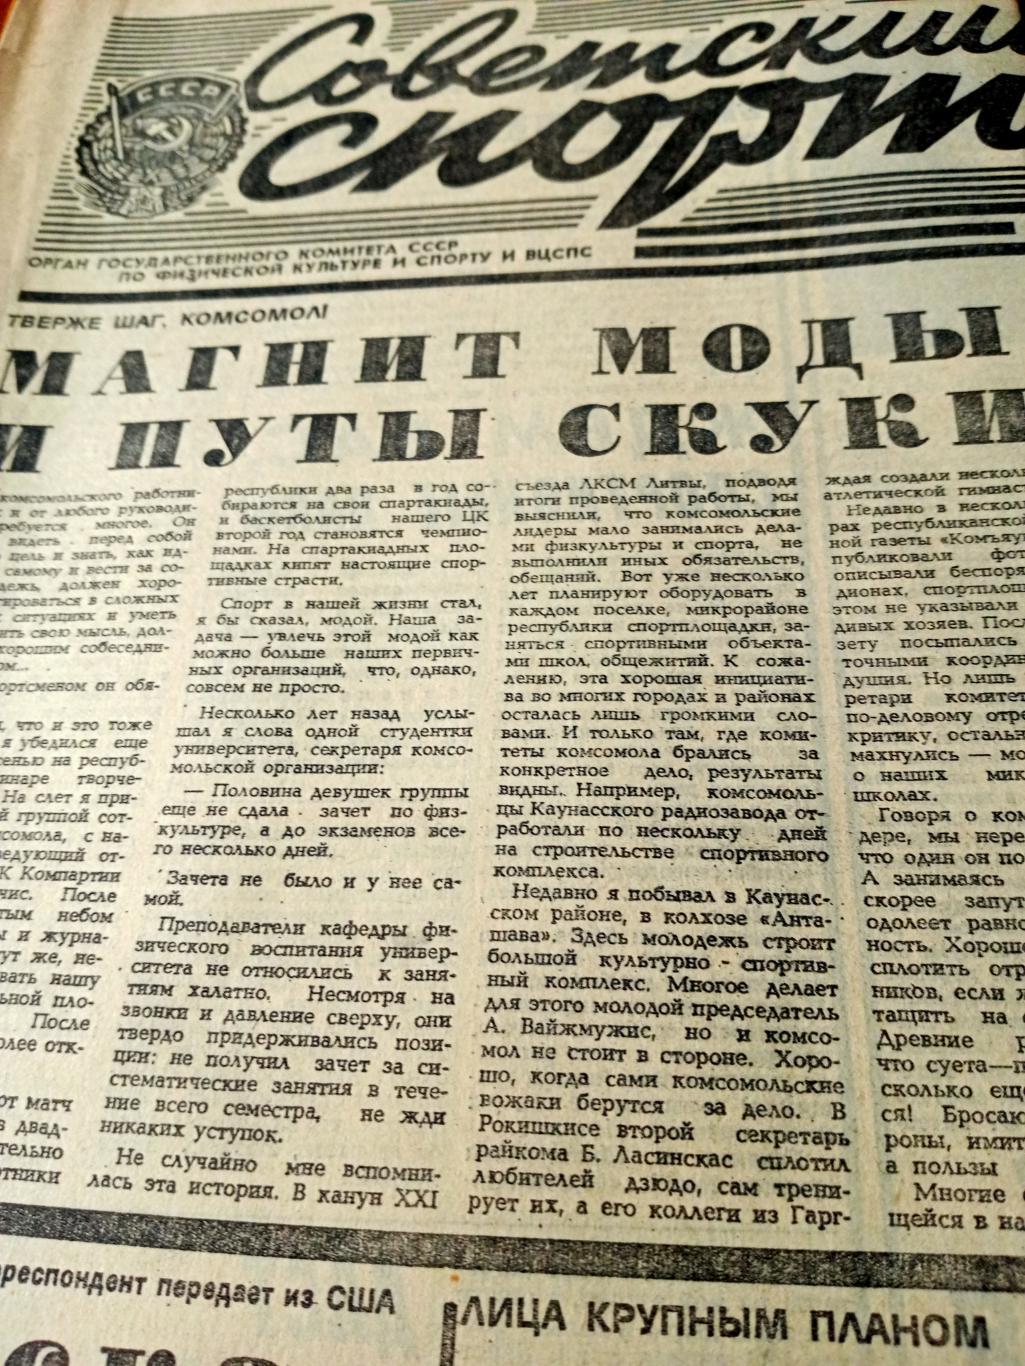 Важные старты. Советский спорт. 1987 год. 12 марта